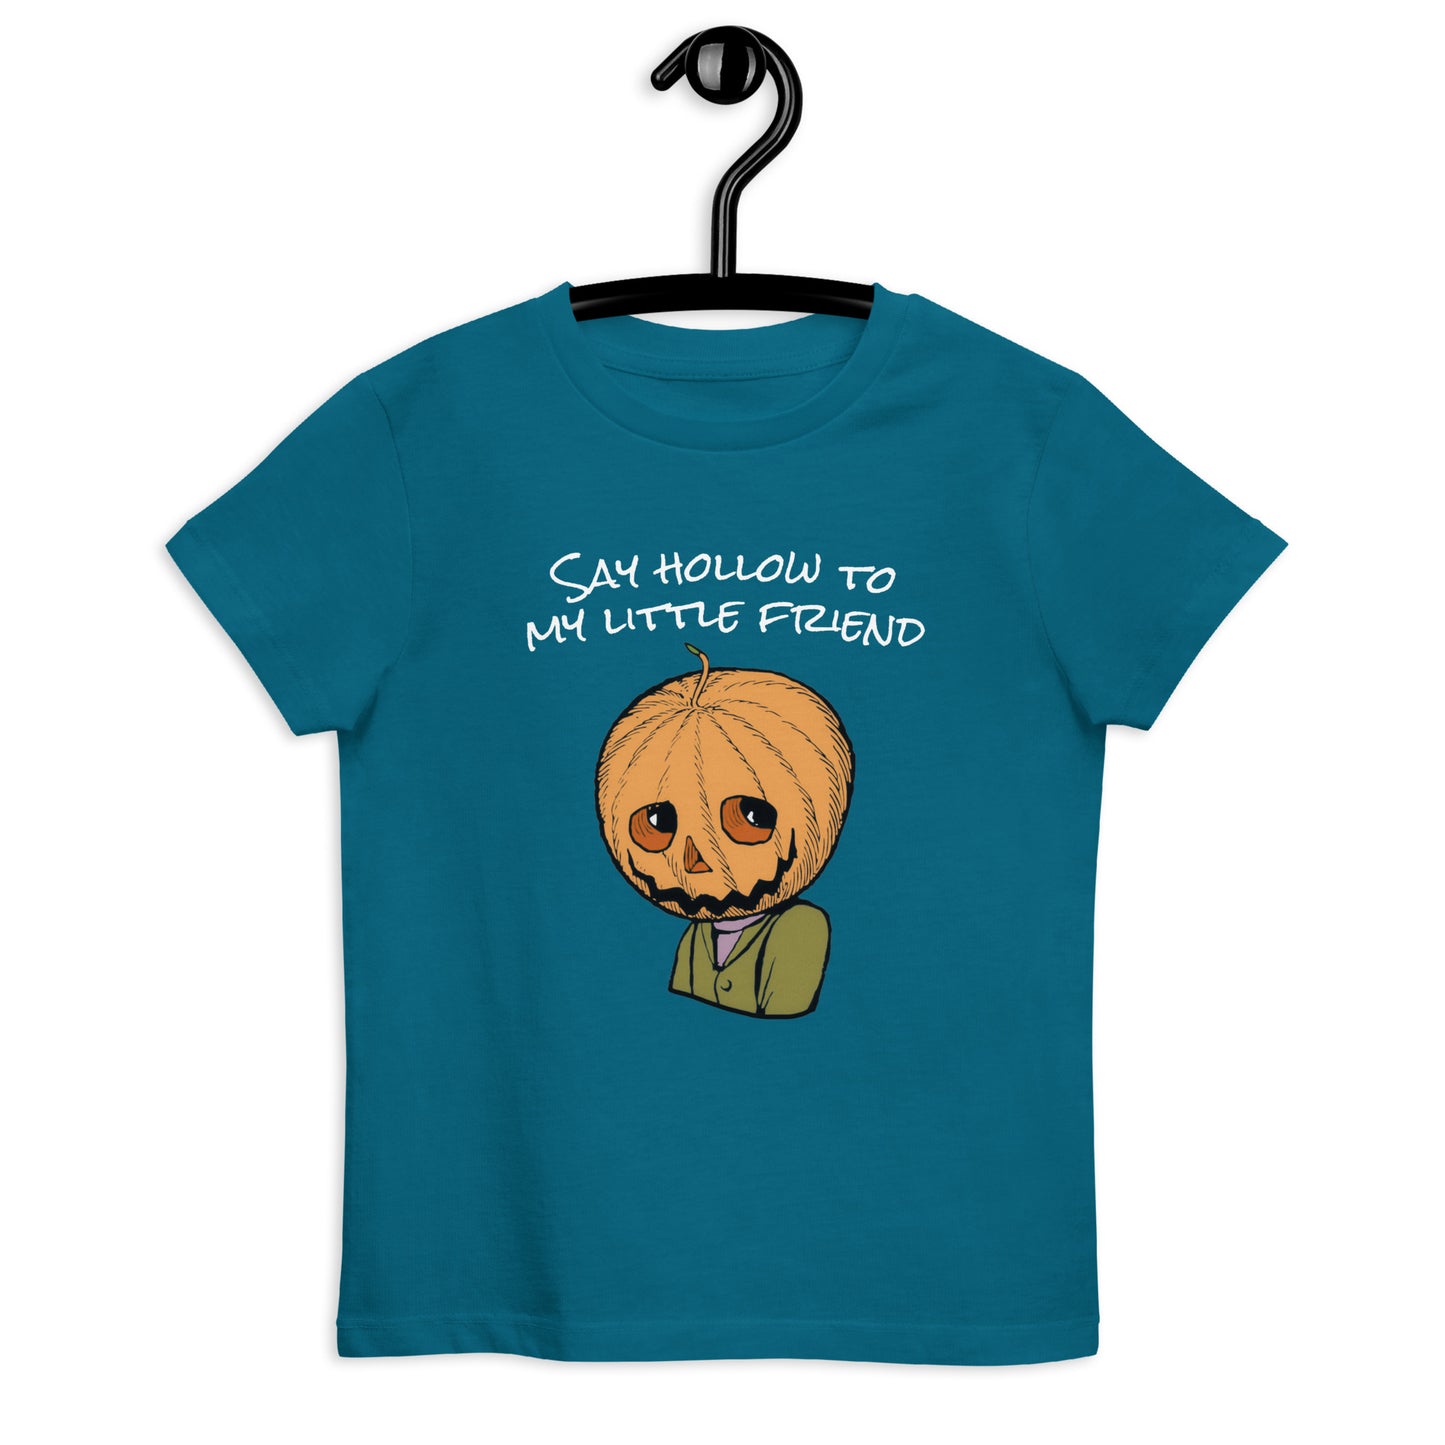 My Little Friend Organic cotton kids t-shirt - Halloween Pumpkin